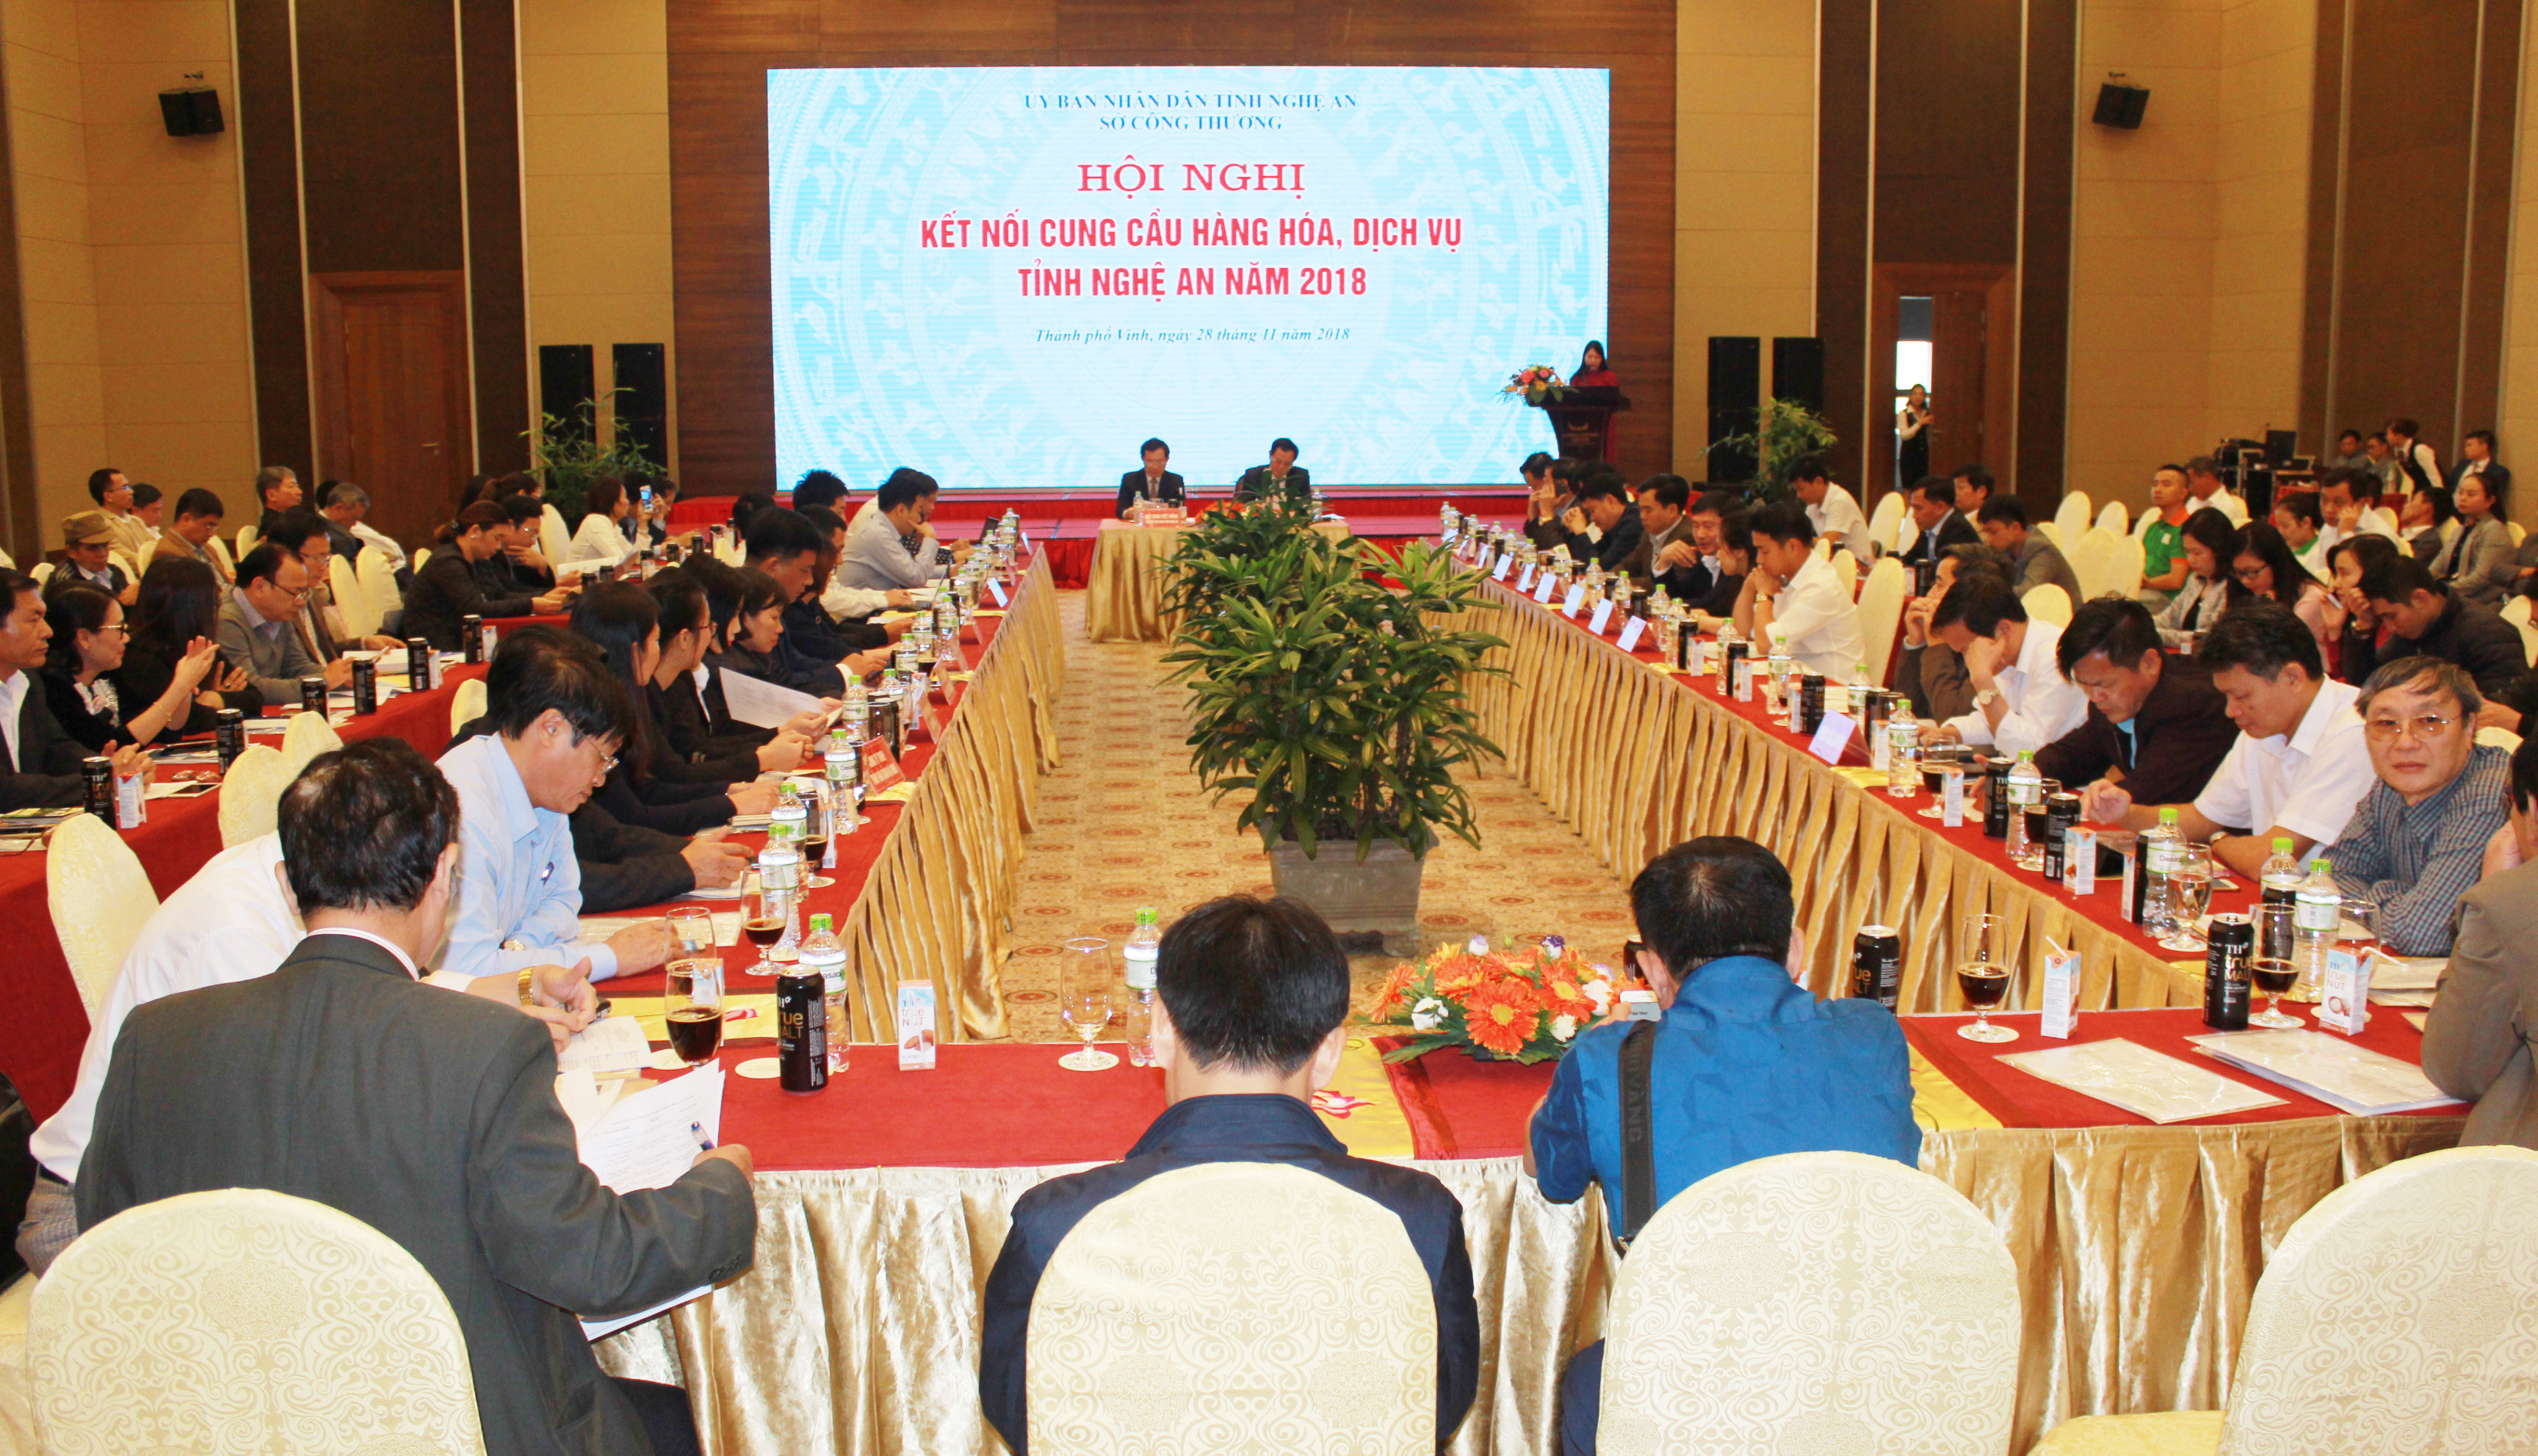 Các đại biểu tham dự hội nghị kết nối cung cầu hàng hóa, dịch vụ tỉnh Nghệ An năm 2018. Ảnh Việt Phương